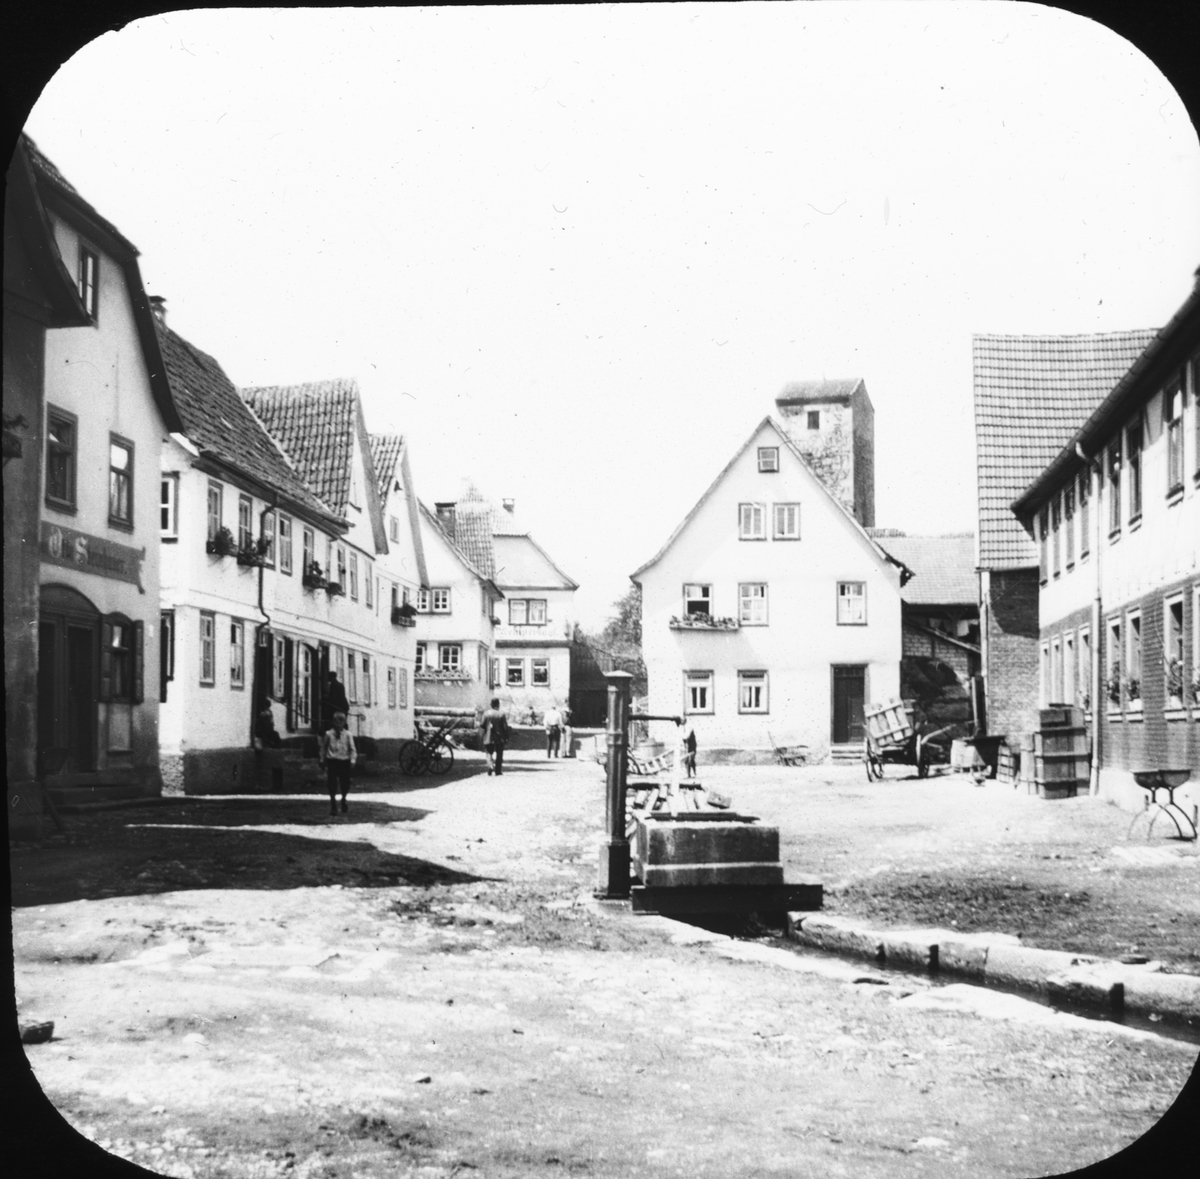 Skioptikonbild med motiv från Fladungen. I bakgrunden Thürnersturm.
Bilden har förvarats i kartong märkt: Vårresan 1910. Fladungen 9. IX.